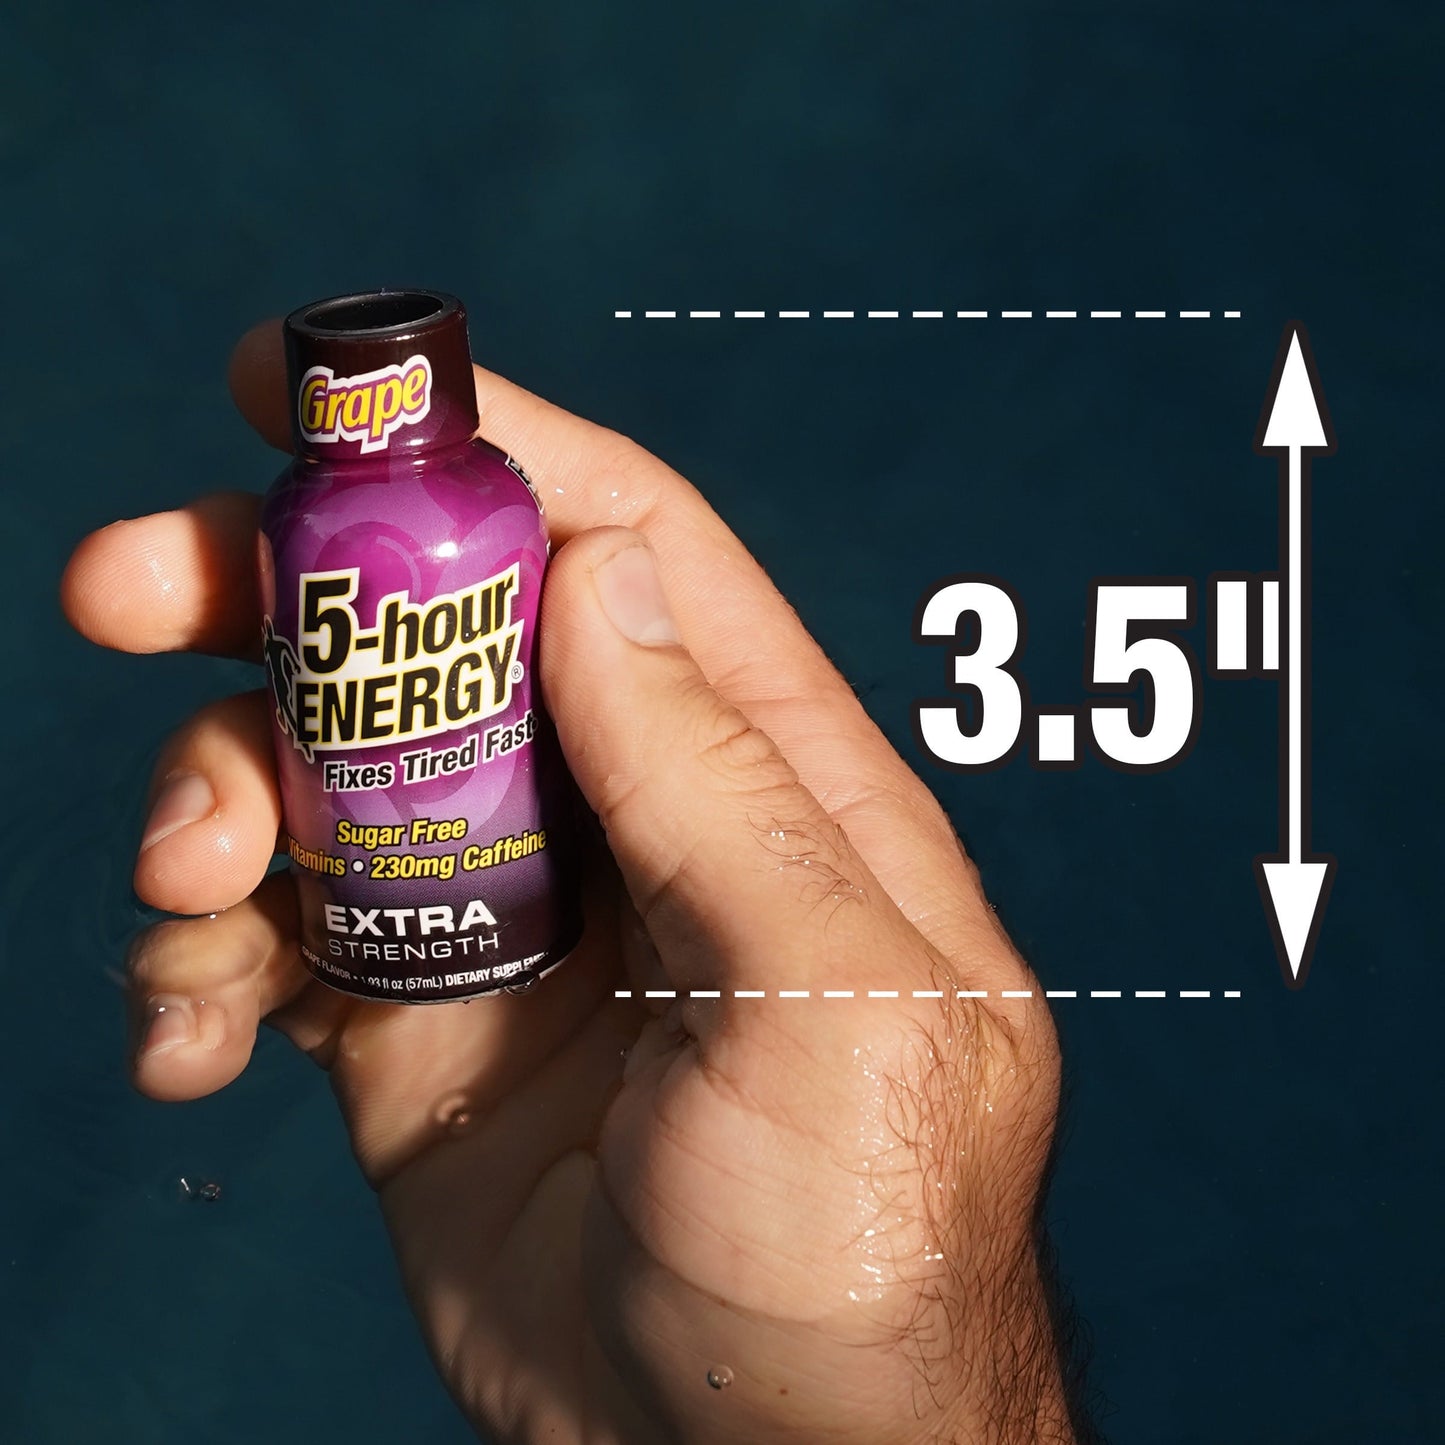 5-hour Energy Shot, Extra Strength, Grape